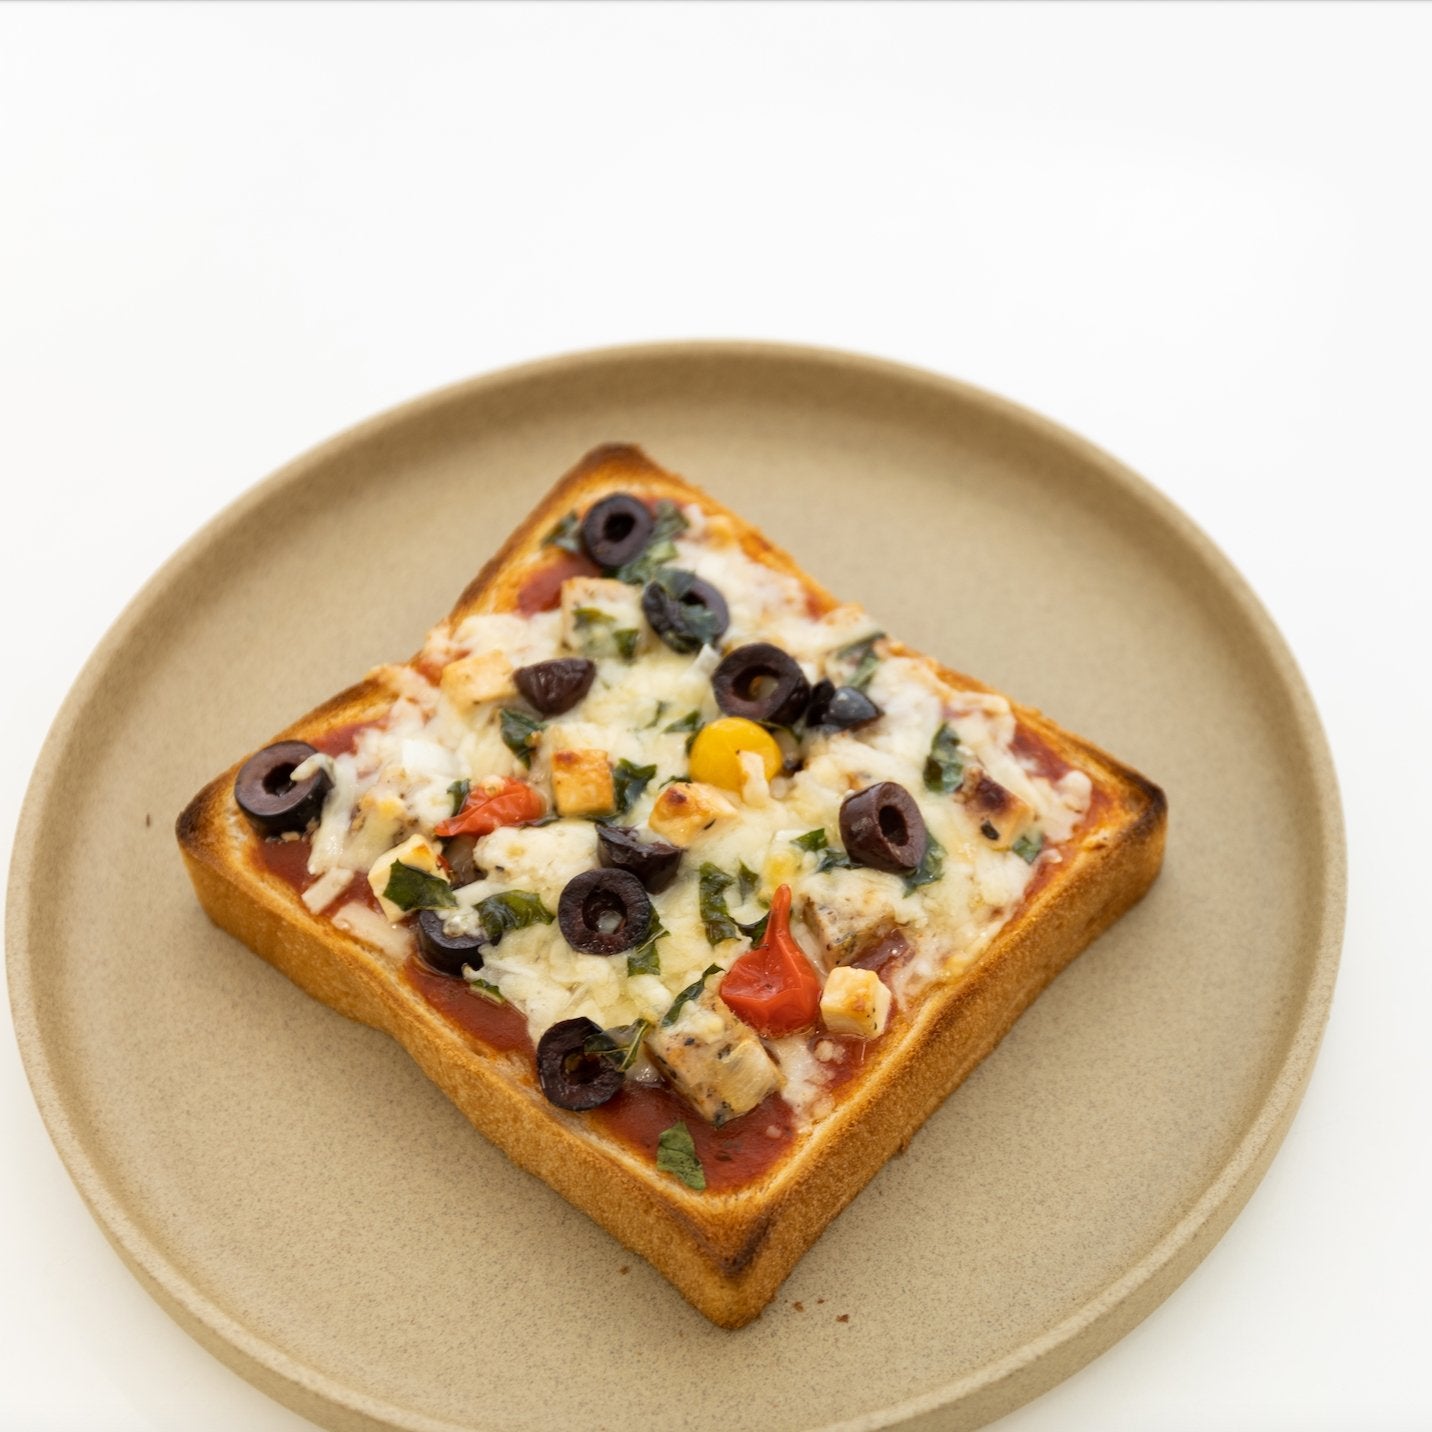 http://shop.tortoisegeneralstore.com/cdn/shop/articles/pizza-toast-equals-classic-comfort-food-balmudas-toaster-oven-recipe-534027.jpg?v=1680880782